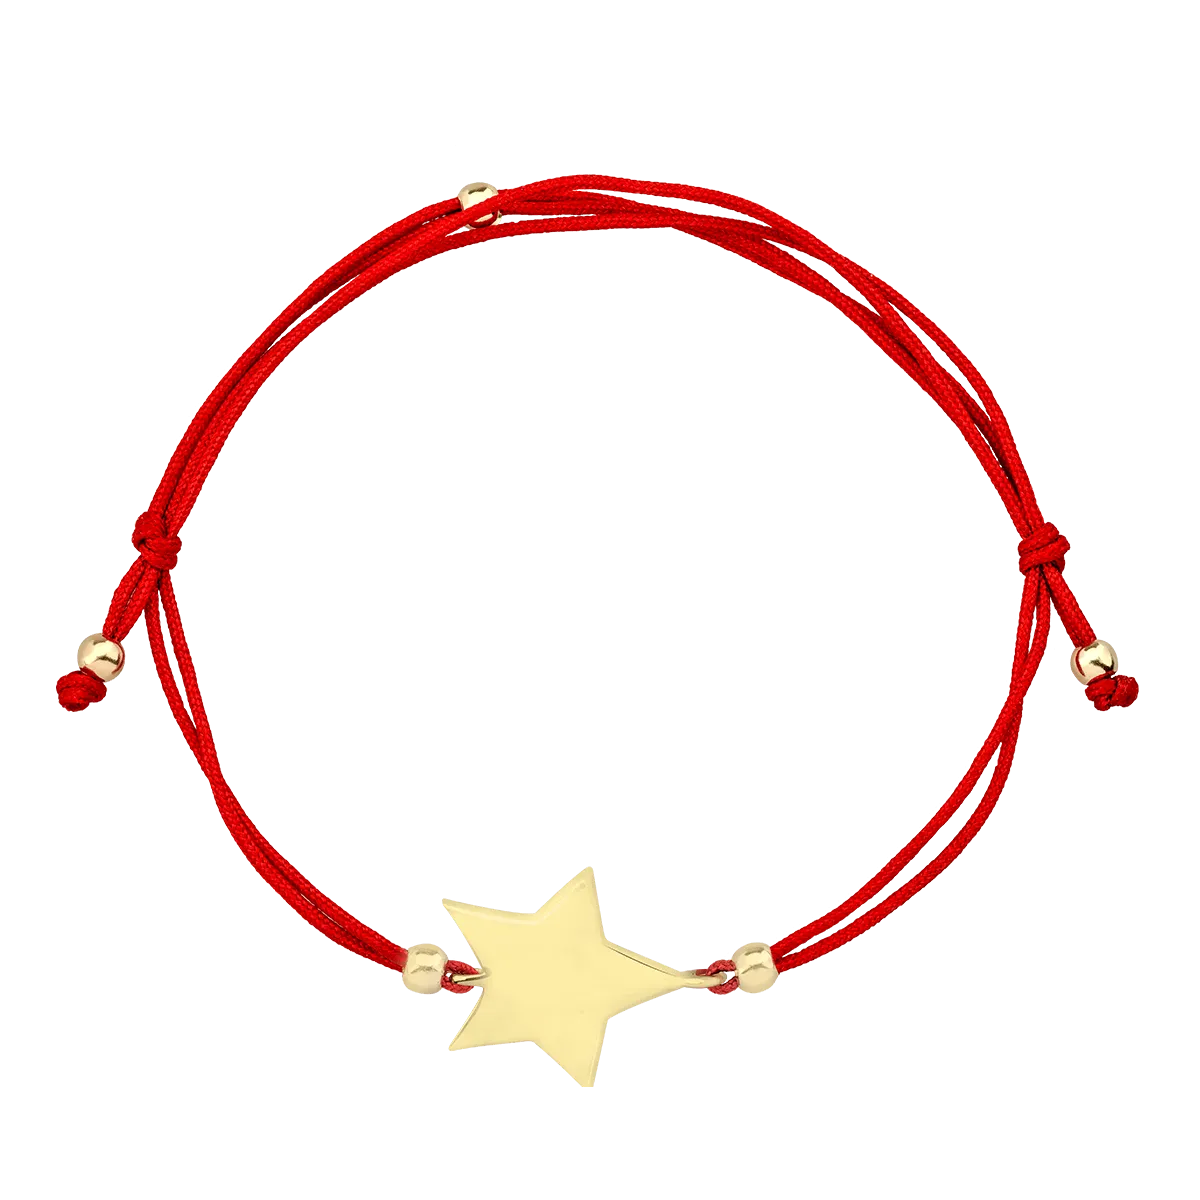 Piros zsinór karkötő csillag charmmal 14K-os sárga aranyból